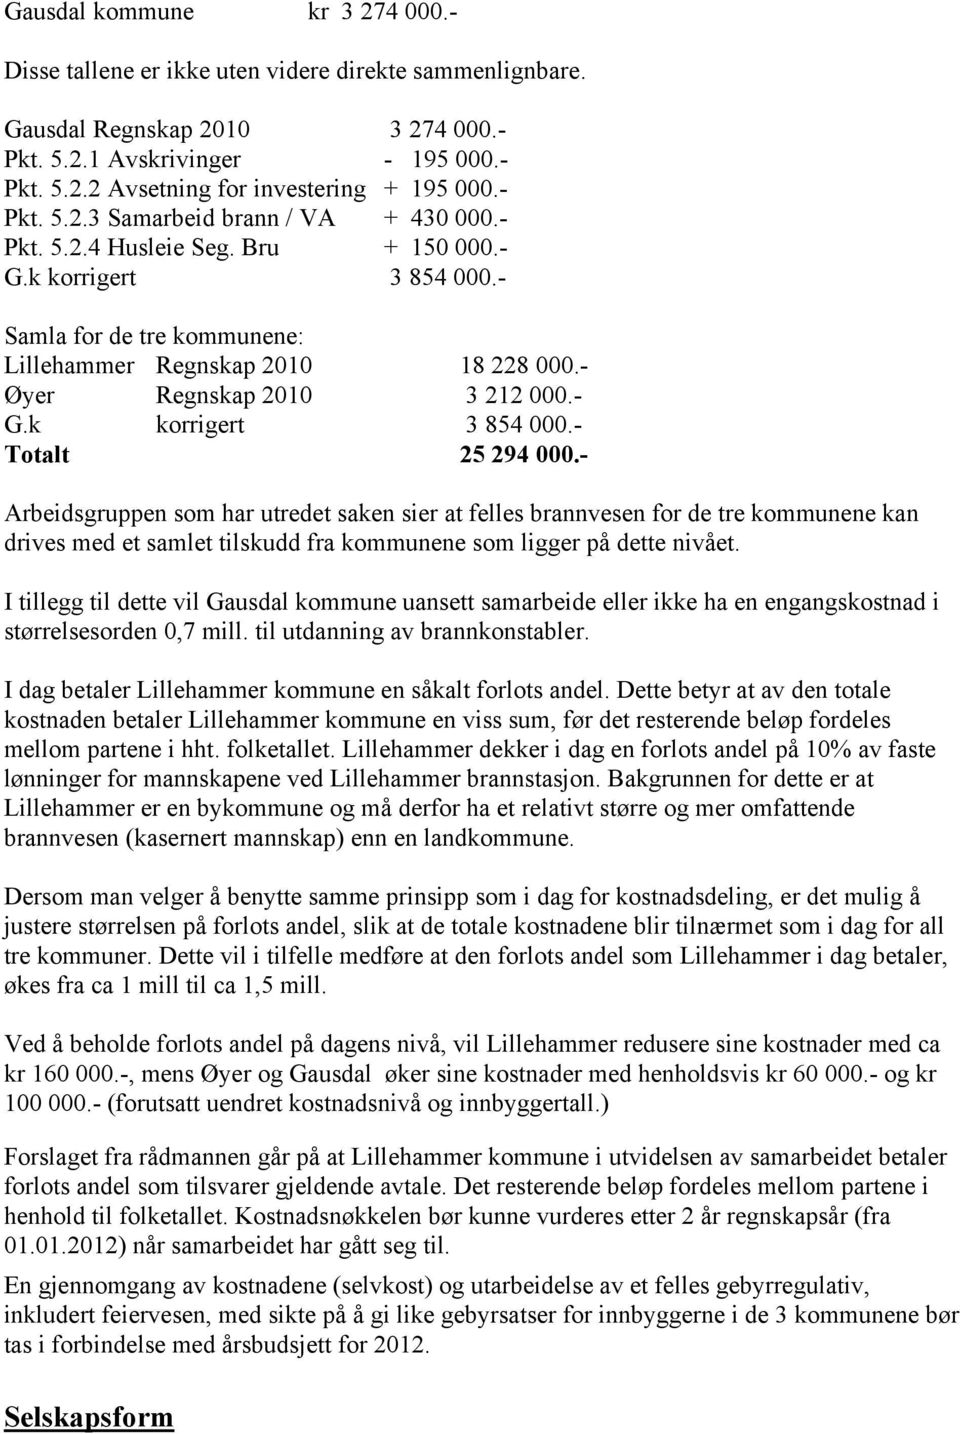 - Øyer Regnskap 2010 3 212 000.- G.k korrigert 3 854 000.- Totalt 25 294 000.